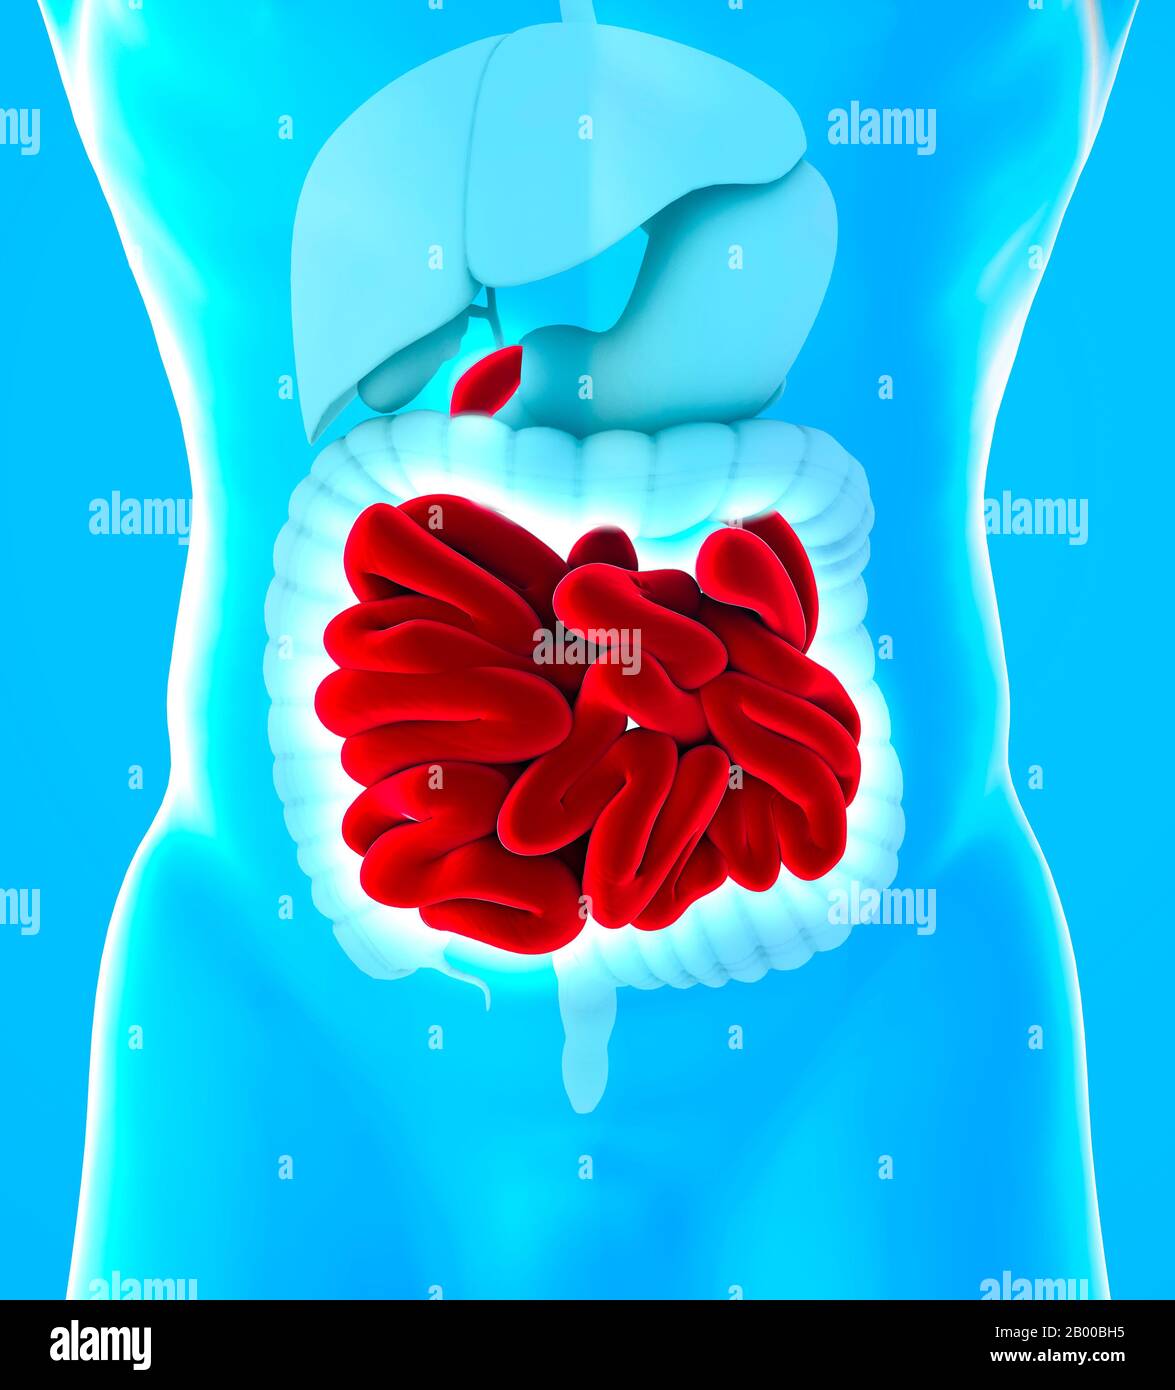 Vista del corpo umano del tratto gastrointestinale inferiore e dell'intestino tenue. L'intestino tenue è suddiviso in duodeno, digiuno e ileo Foto Stock